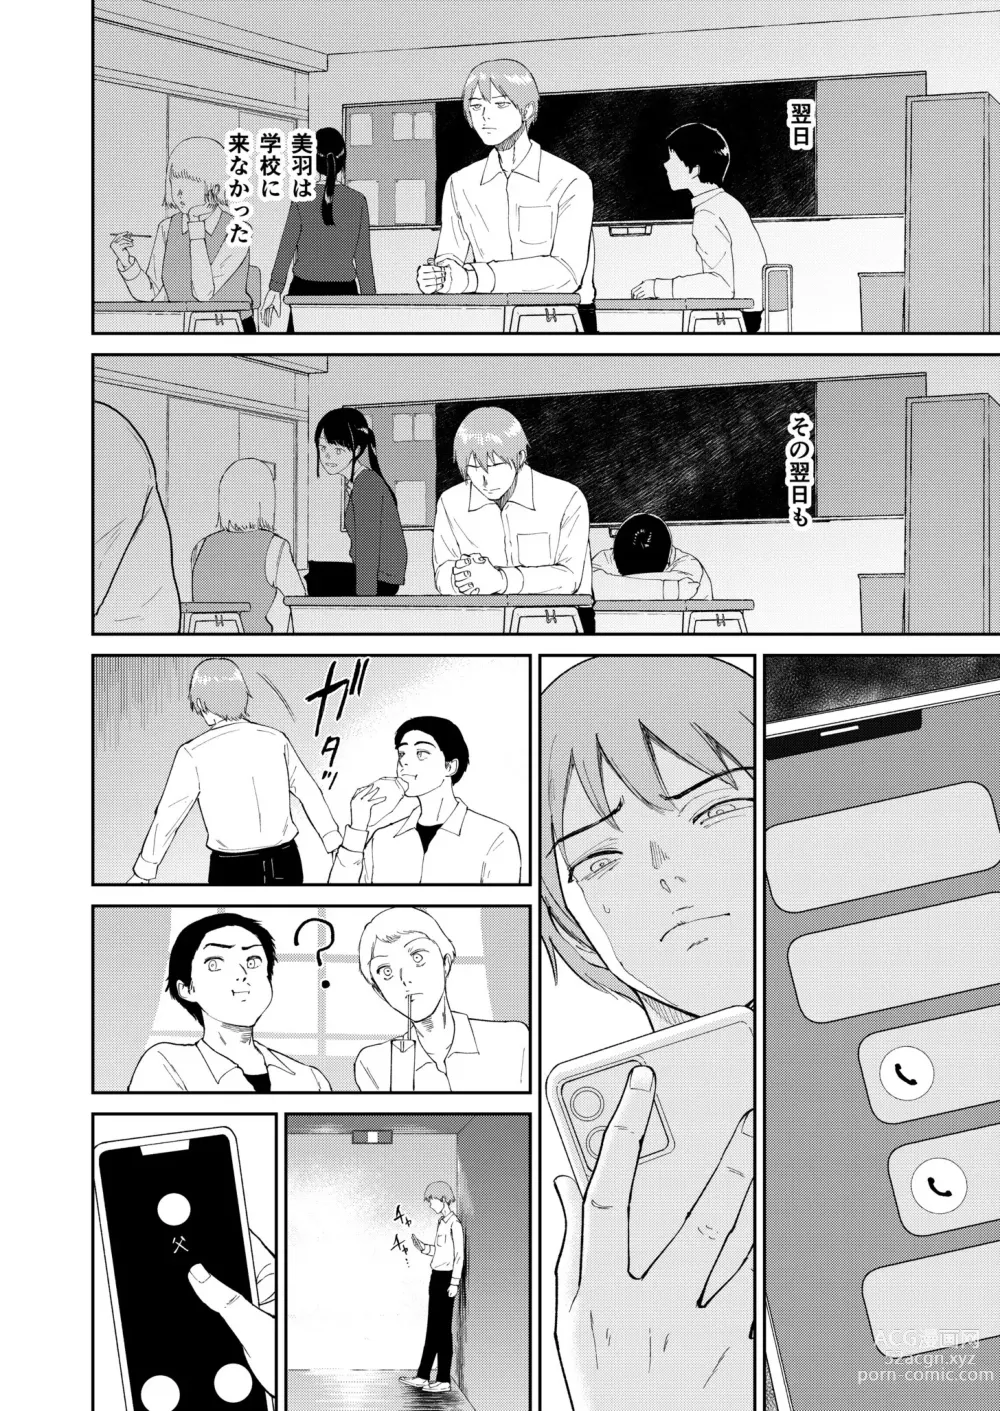 Page 8 of manga Iinarikko 5